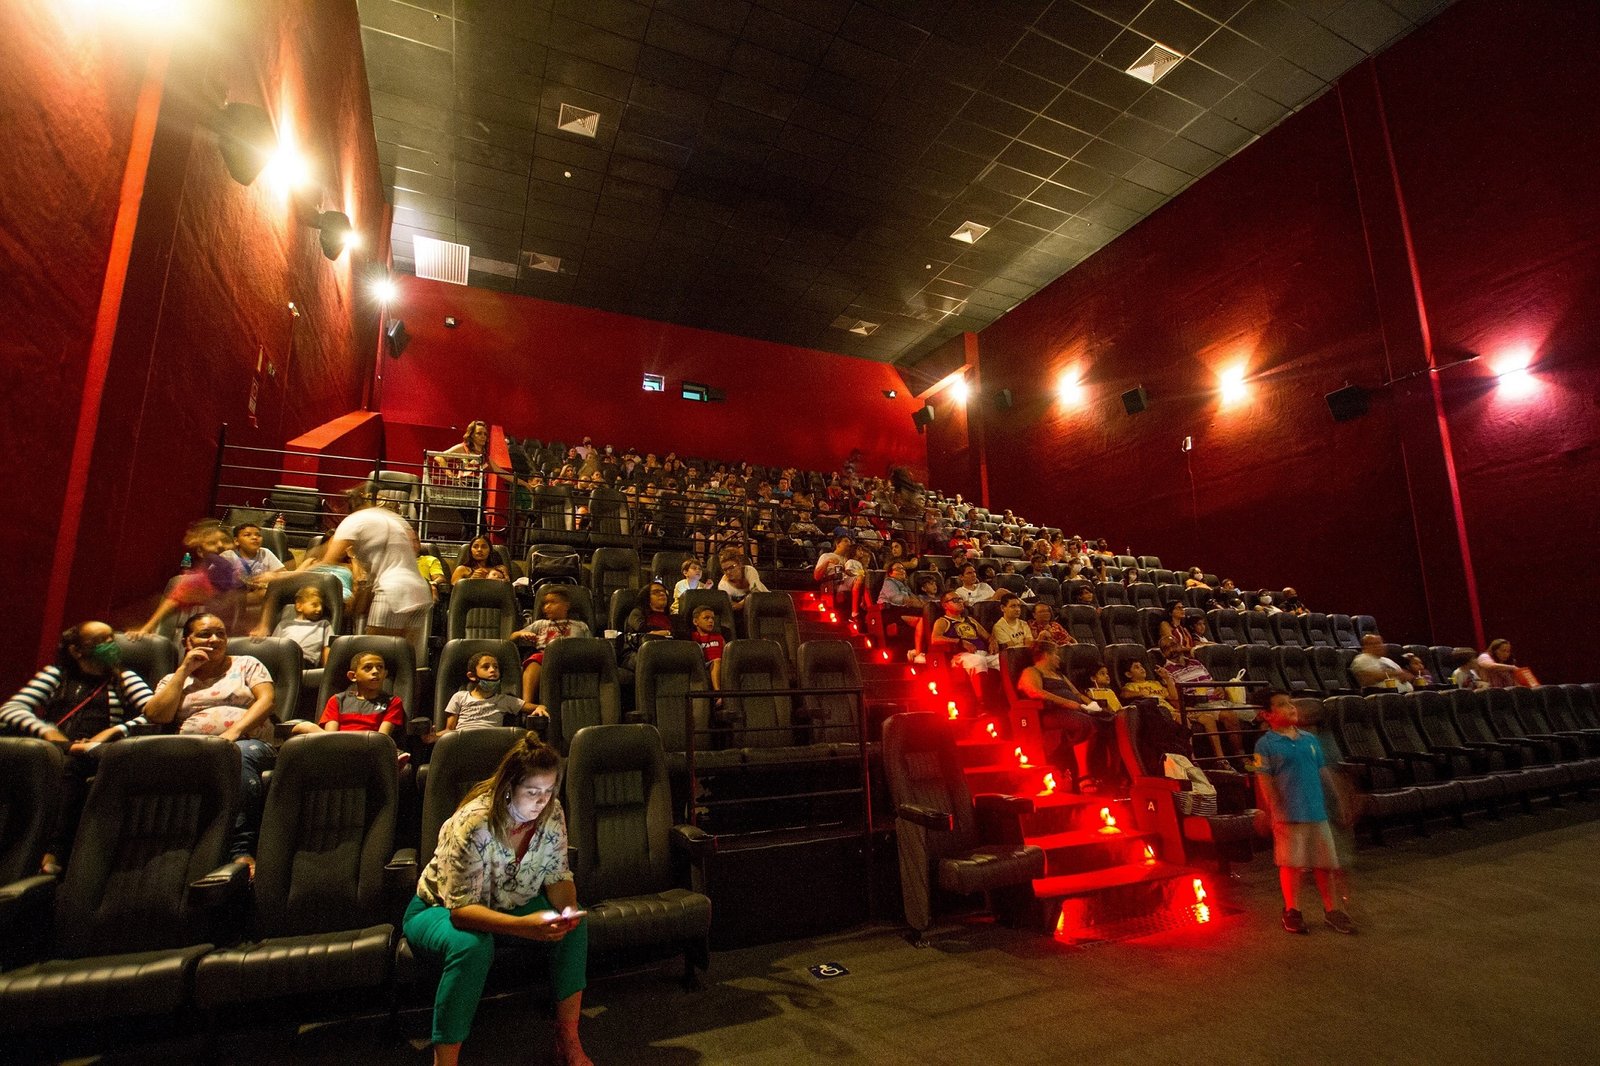 Boulevard Shopping exibe o filme “Trolls 3” pelo projeto “Sessão Azul” no sábado, dia 28 de outubro